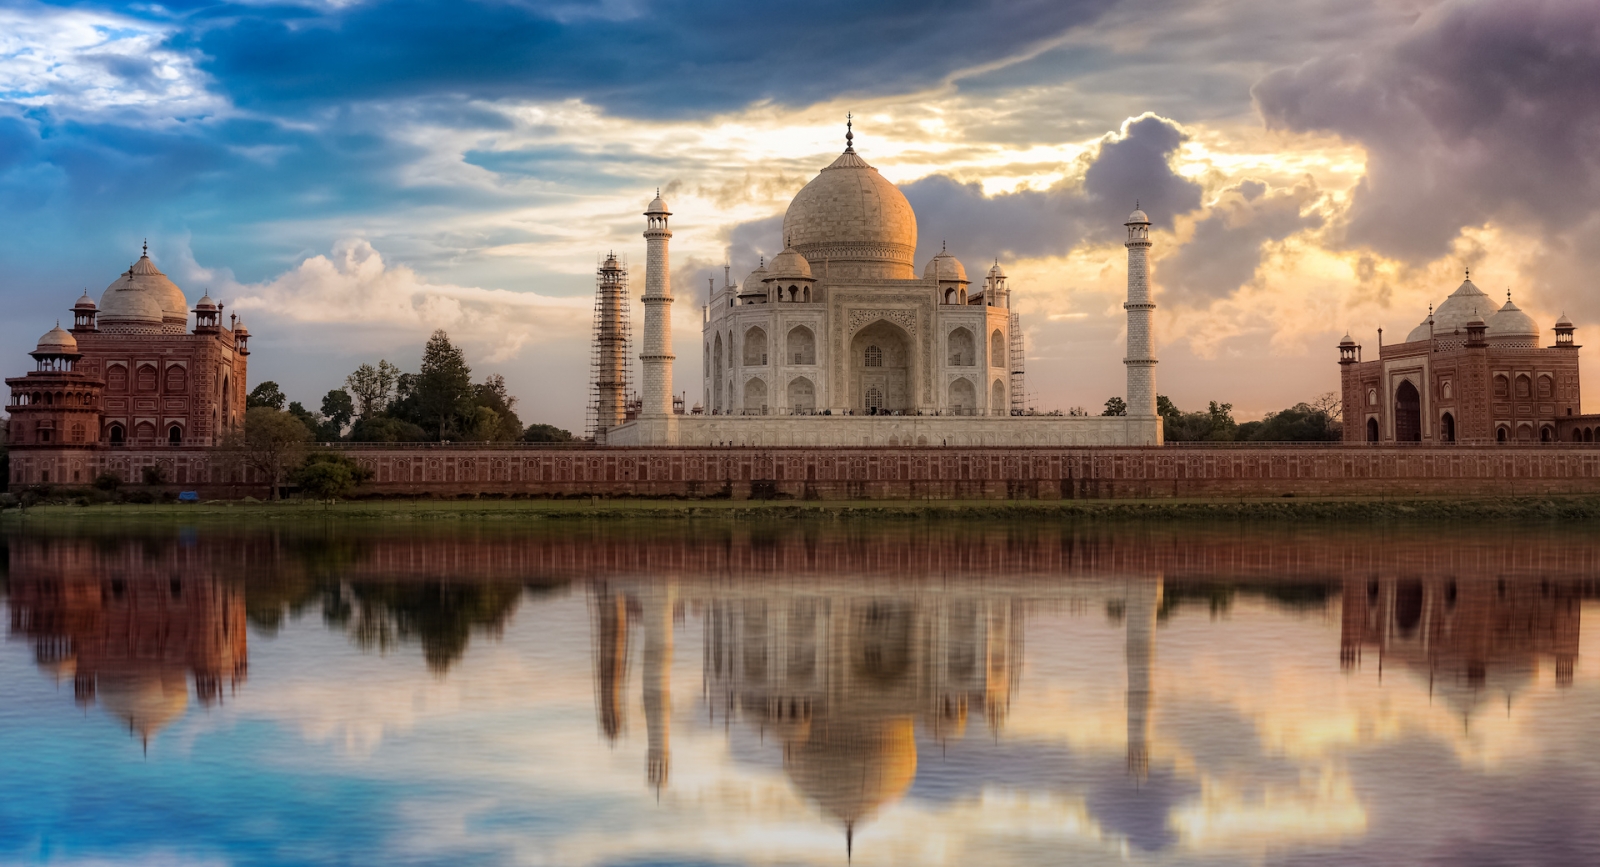 Vista del atardecer del Taj Mahal desde Mehtab Bagh a orillas del río Yamuna.  Taj Mahal es un mausoleo de mármol blanco designado como Patrimonio de la Humanidad por la UNESCO en Agra